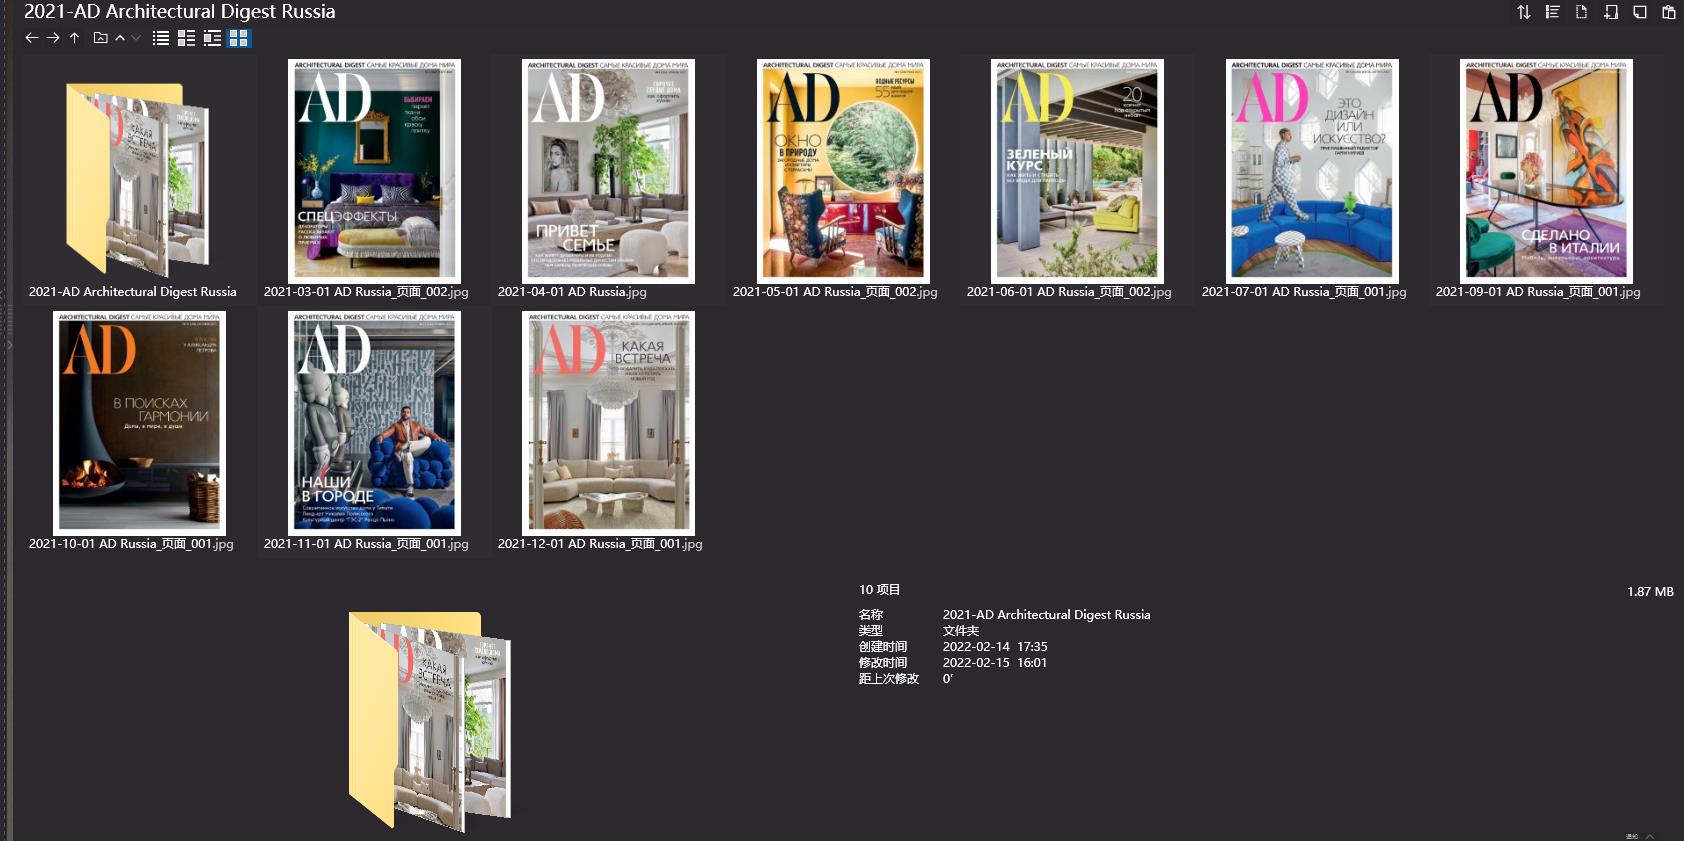 室內設計雜誌AD Architectural Digest,軟裝設計雜誌AD Architectural Digest,室內設計雜誌,軟裝設計雜誌,AD設計電子雜誌,雜誌下載,AD雜誌合集,安邸,安邸雜誌